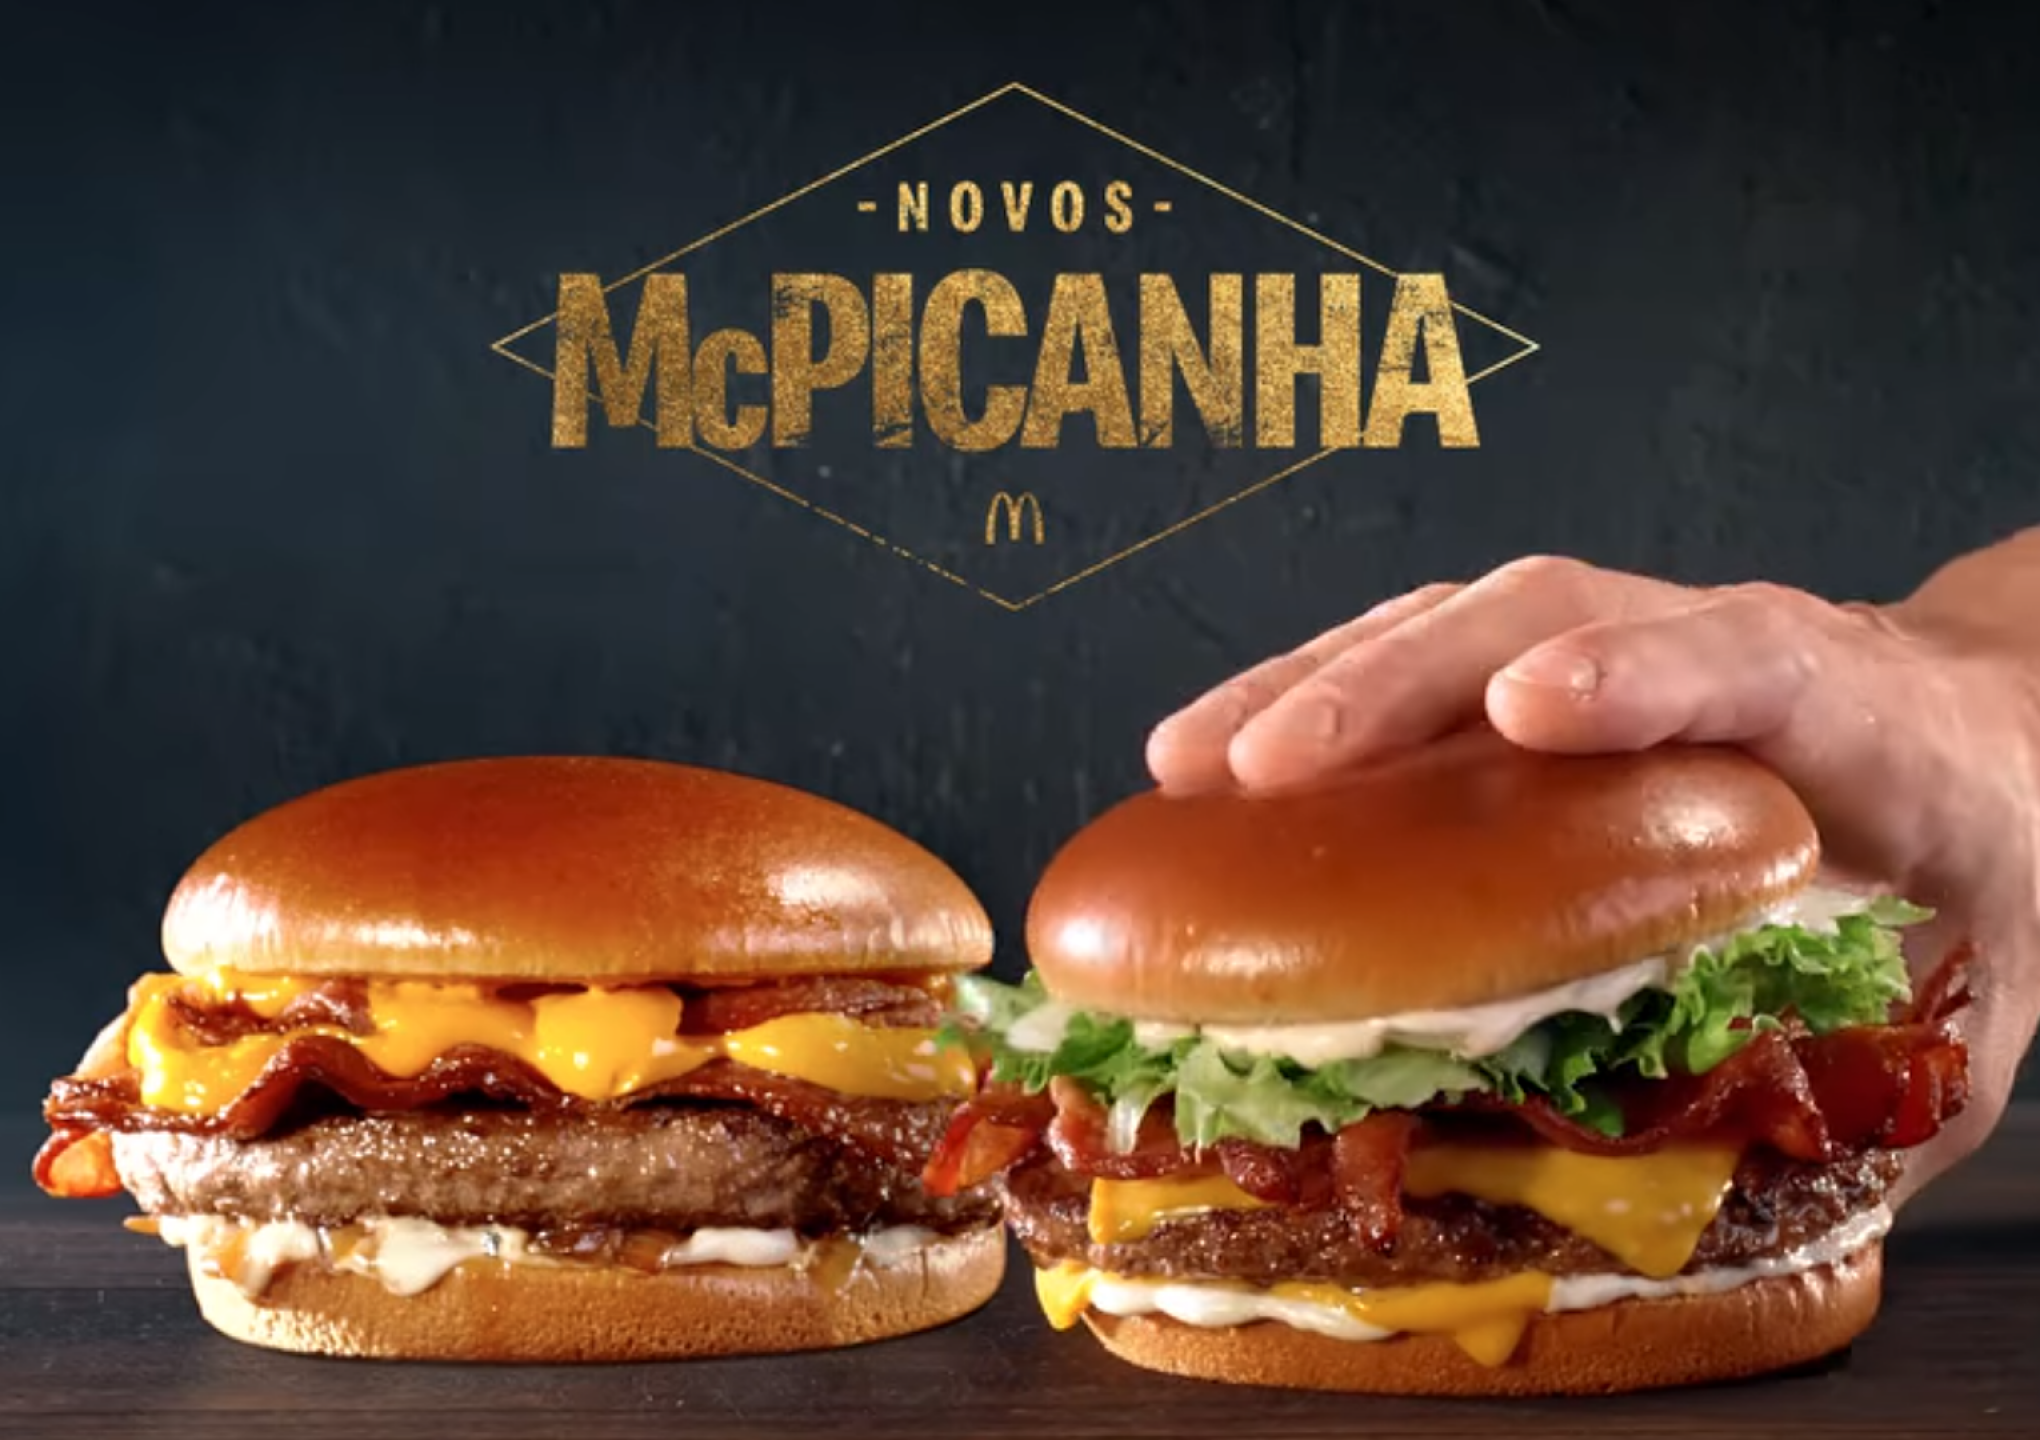 McDonald's tira novos 'McPicanha' do cardápio e pede desculpas - País -  Jornal NH - cardápio mcdonald's